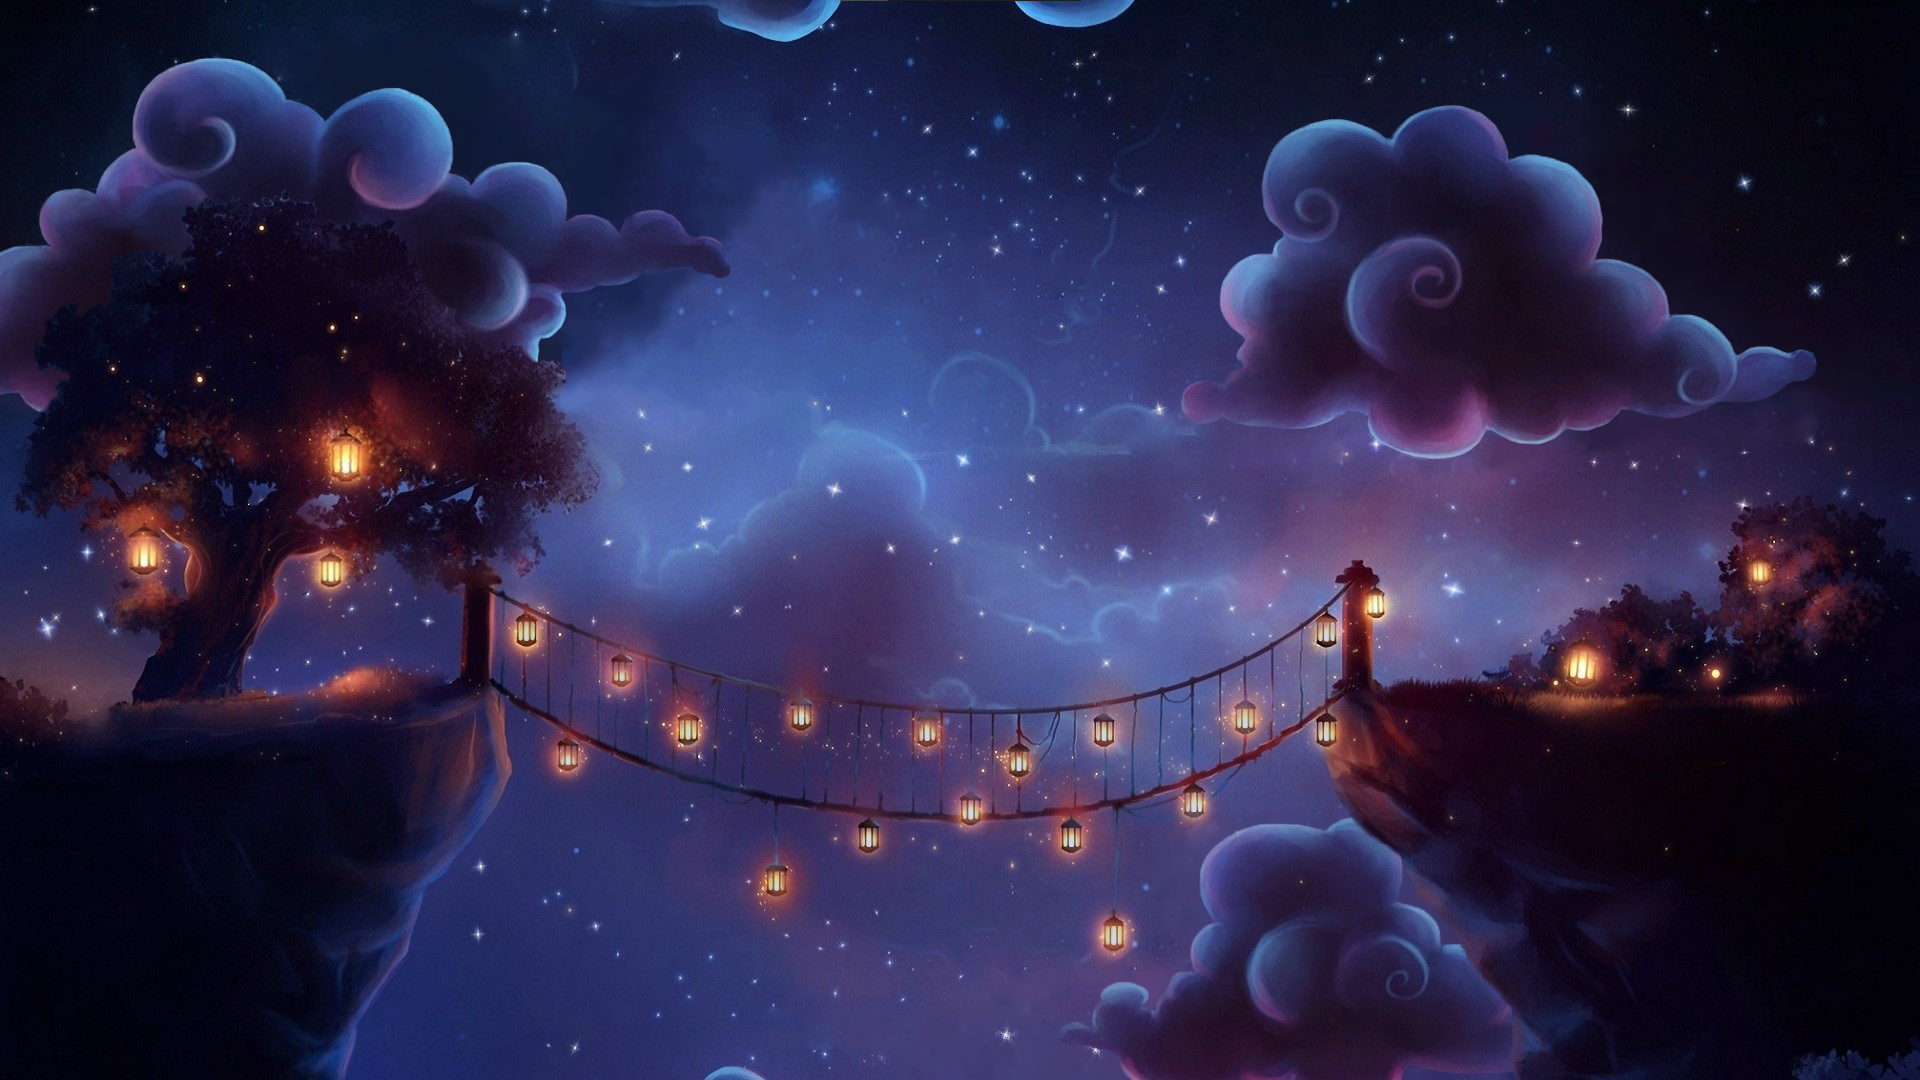 Night Magic Bridge Night Lanterns Clouds Stars Digital Art 1920x1080